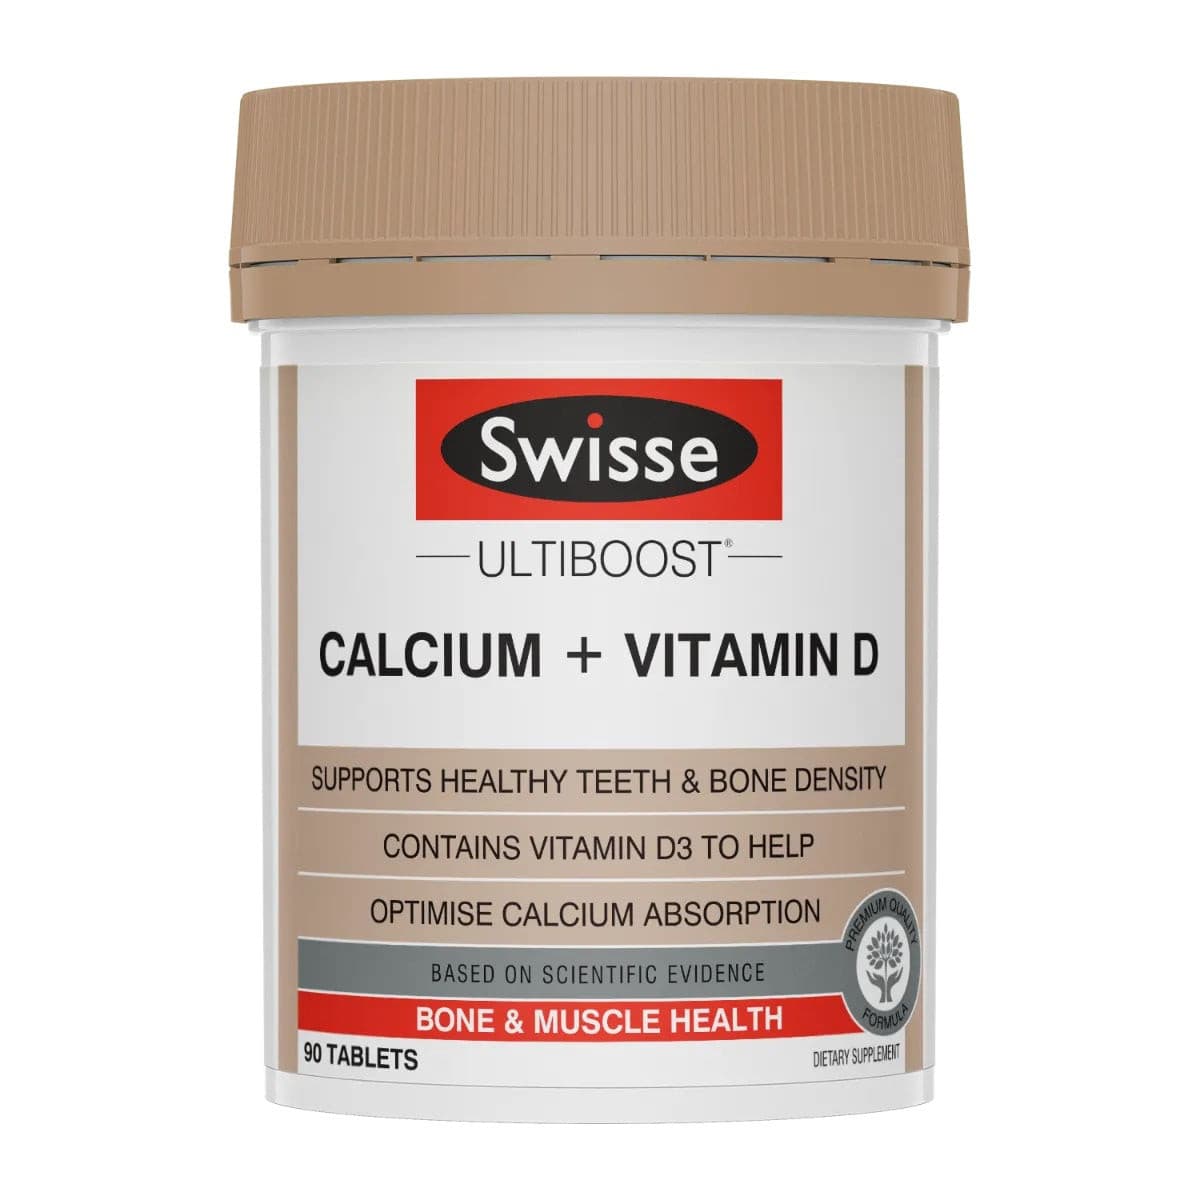 Swisse Ultiboost Calcium + Vitamin D.